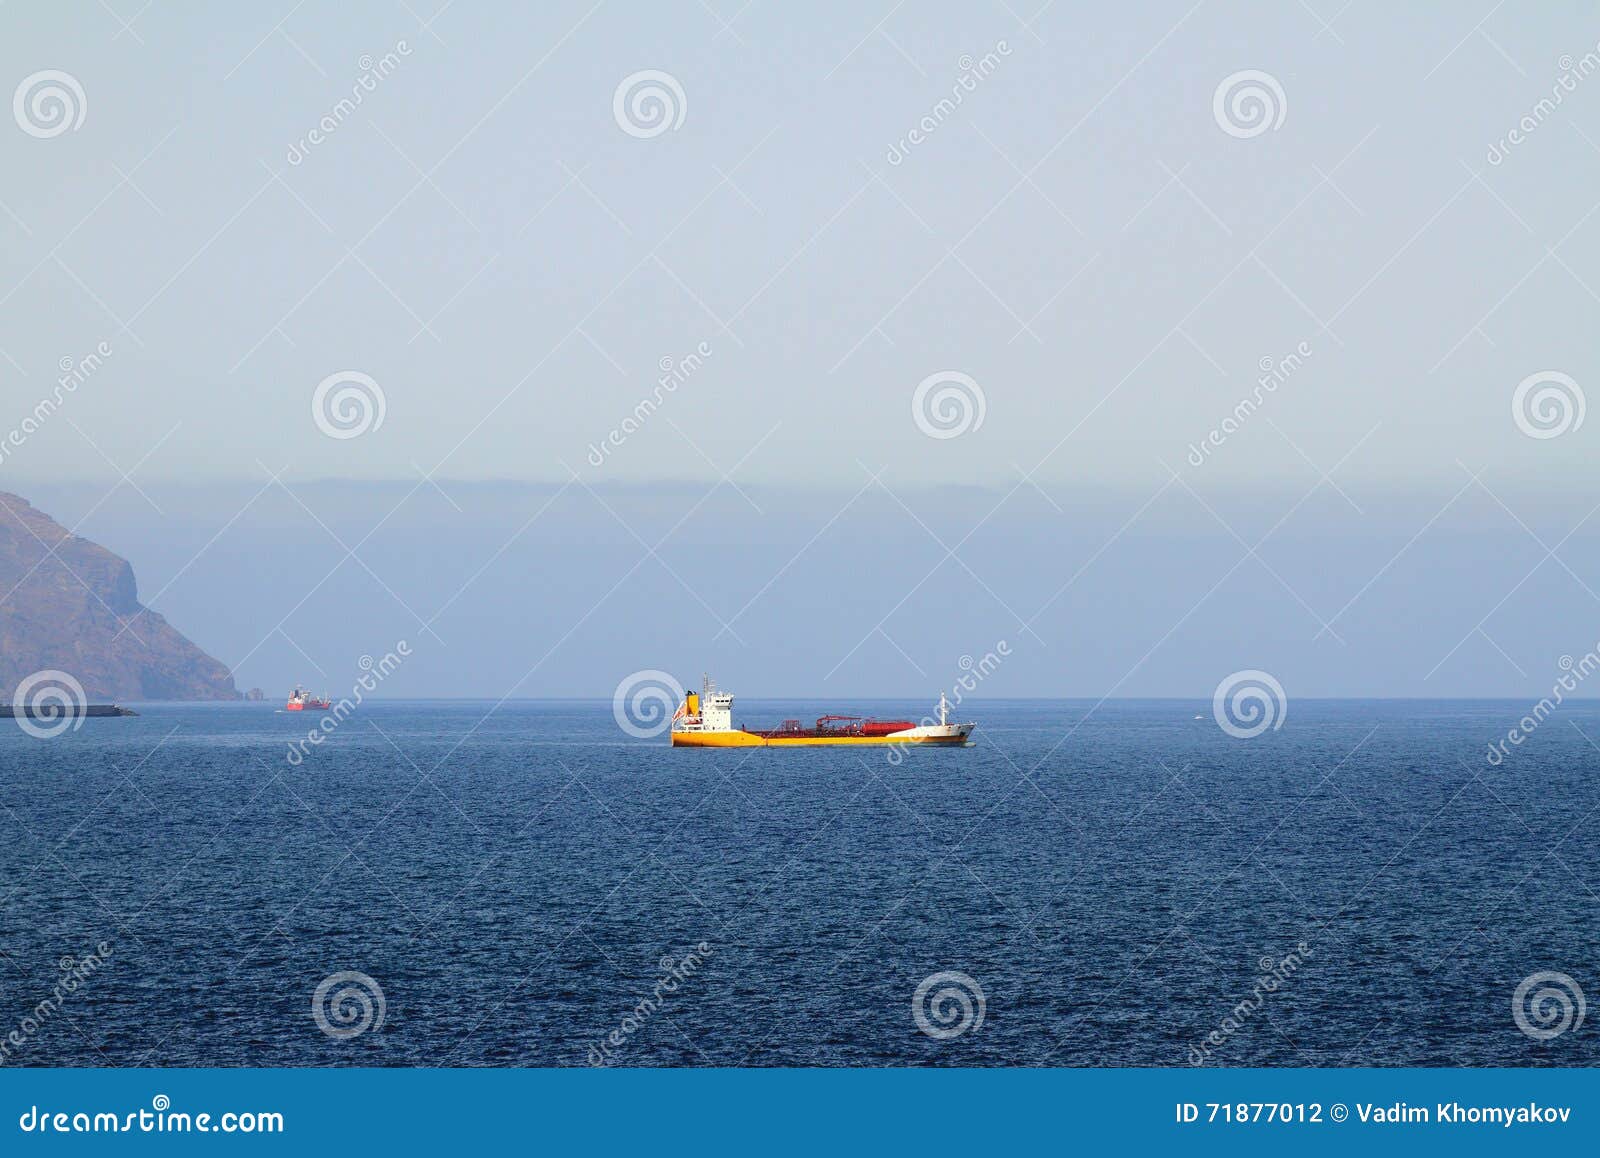 cargoship in sea